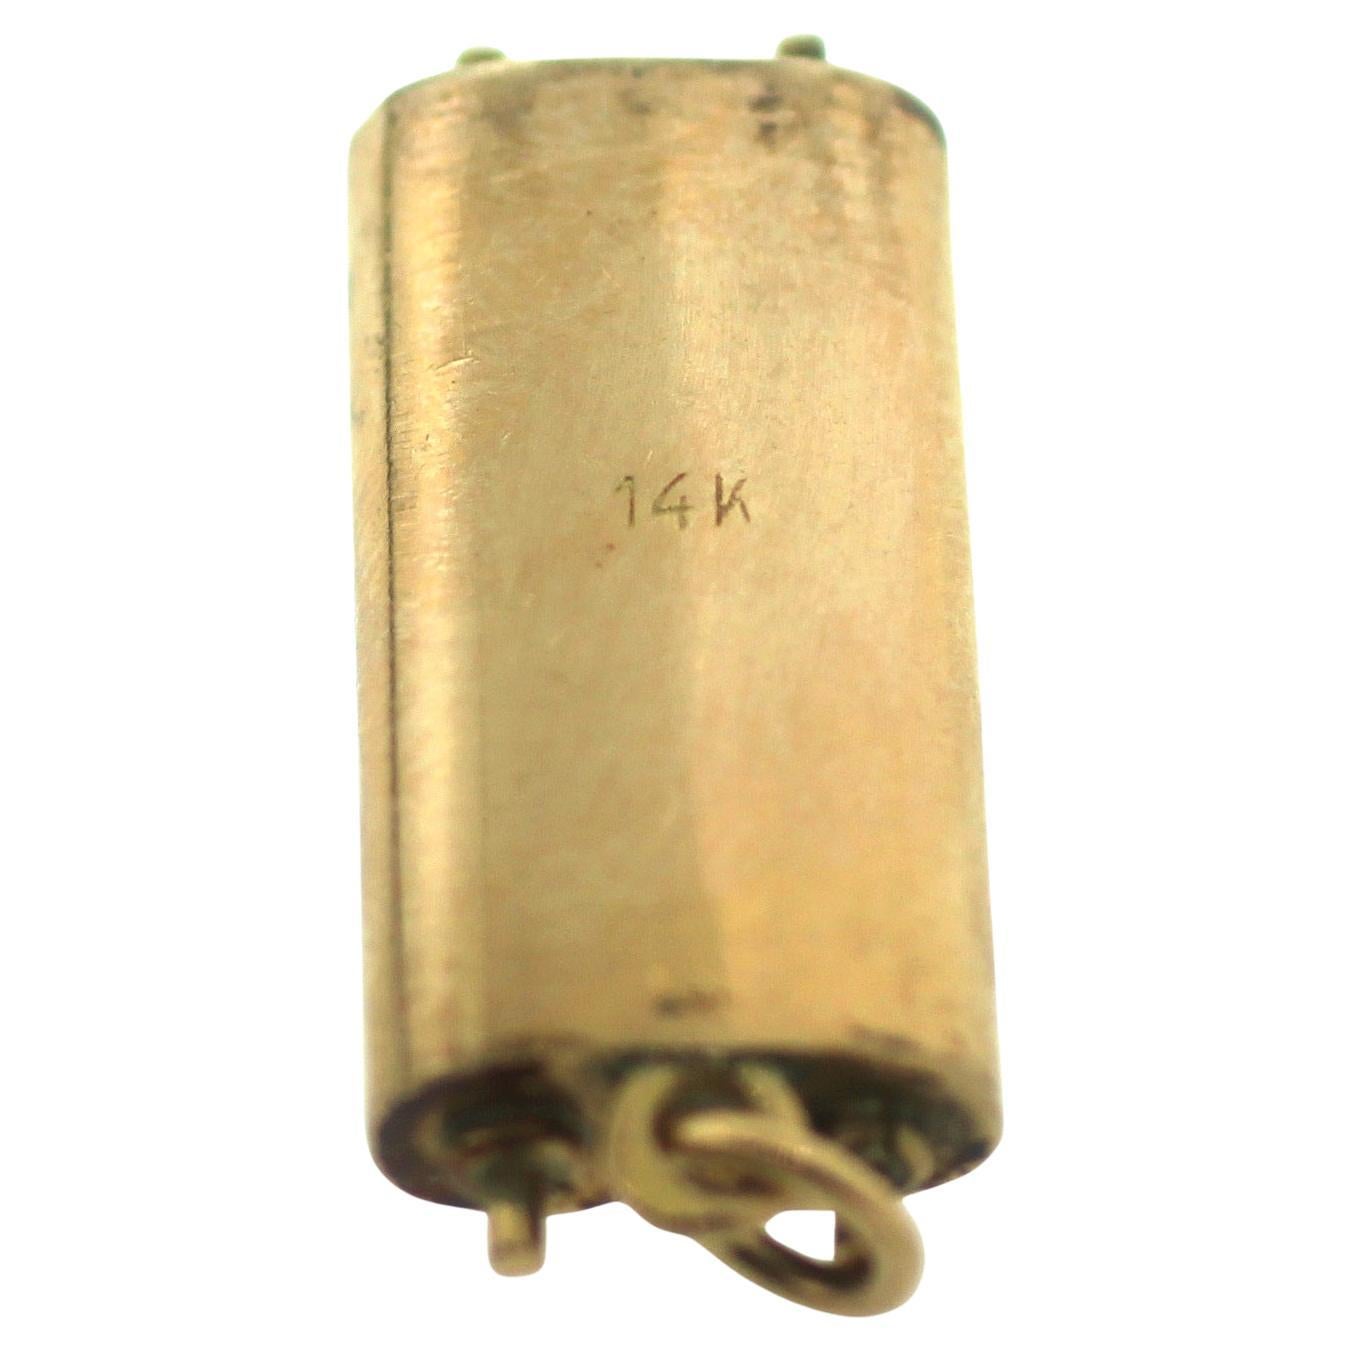 Collier à breloques judaïque Mezuzah en or avec pendentif (succession)
Or jaune 14K
2.8 grammes
26 mm de long
